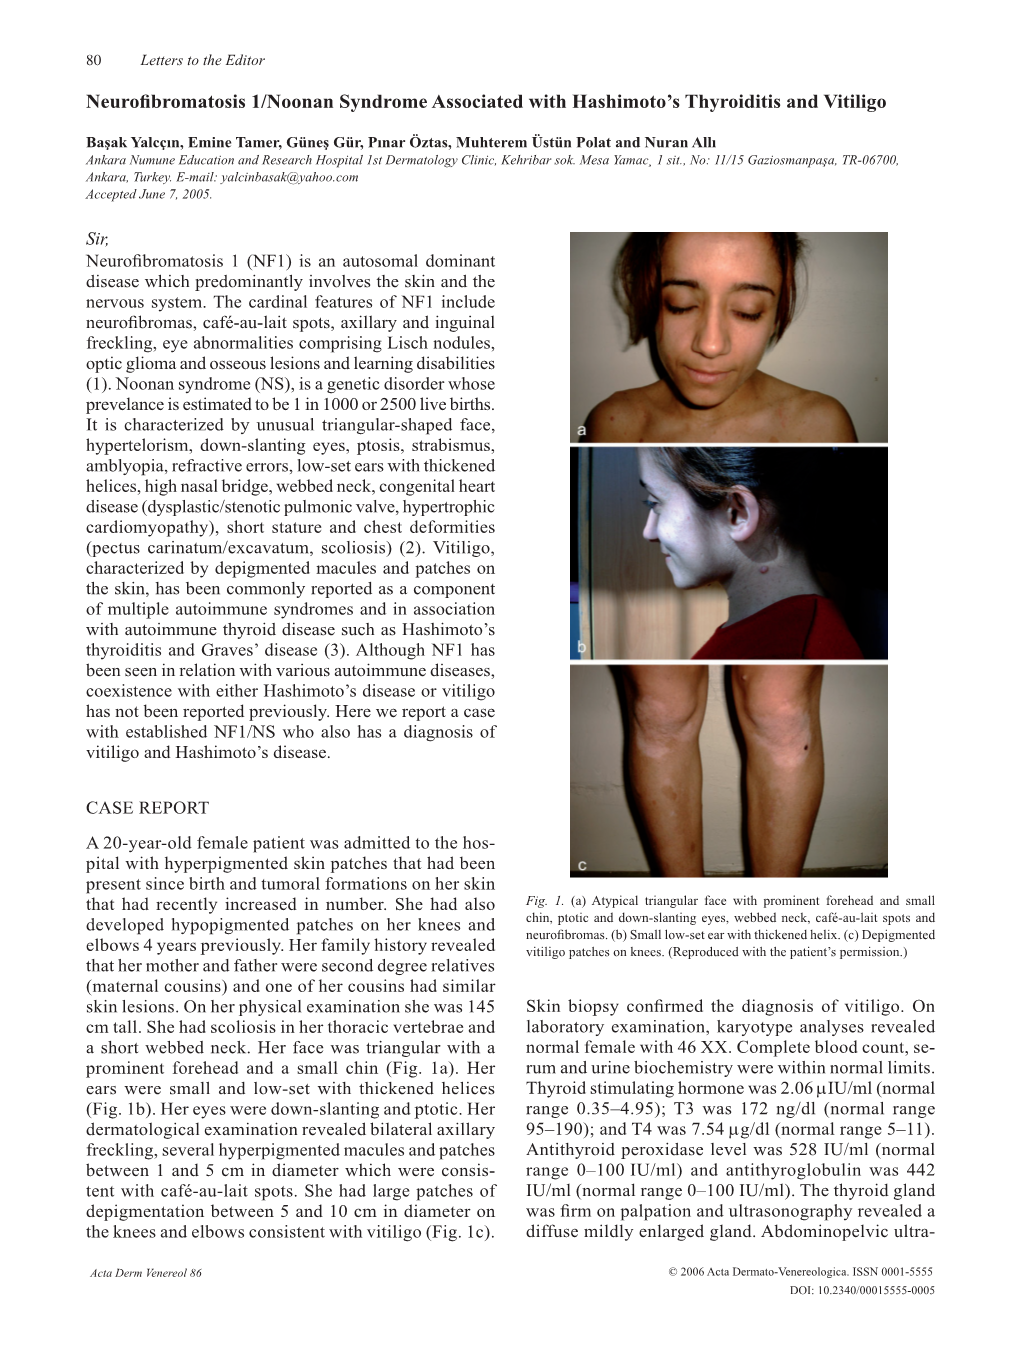 Neurofibromatosis 1/Noonan Syndrome Associated with Hashimoto's Thyroiditis and Vitiligo